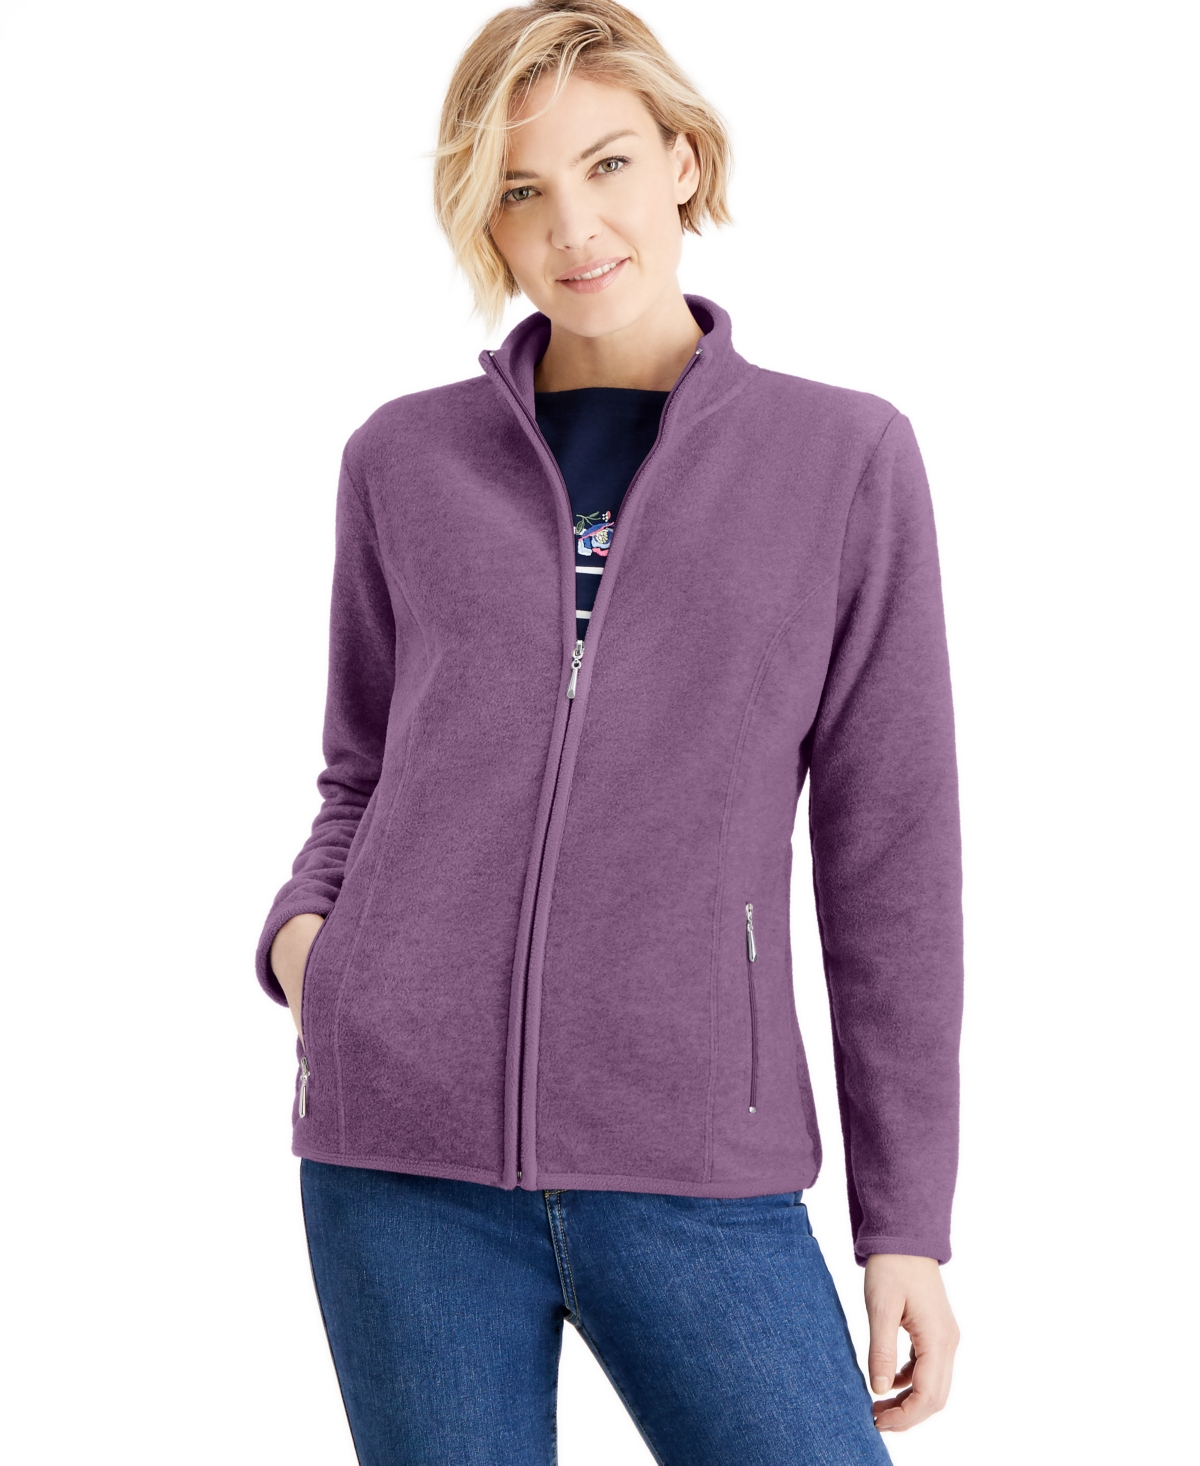 Karen Scott Sport Zip-Up Zeroproof Fleece Jacket, Created for Macy's